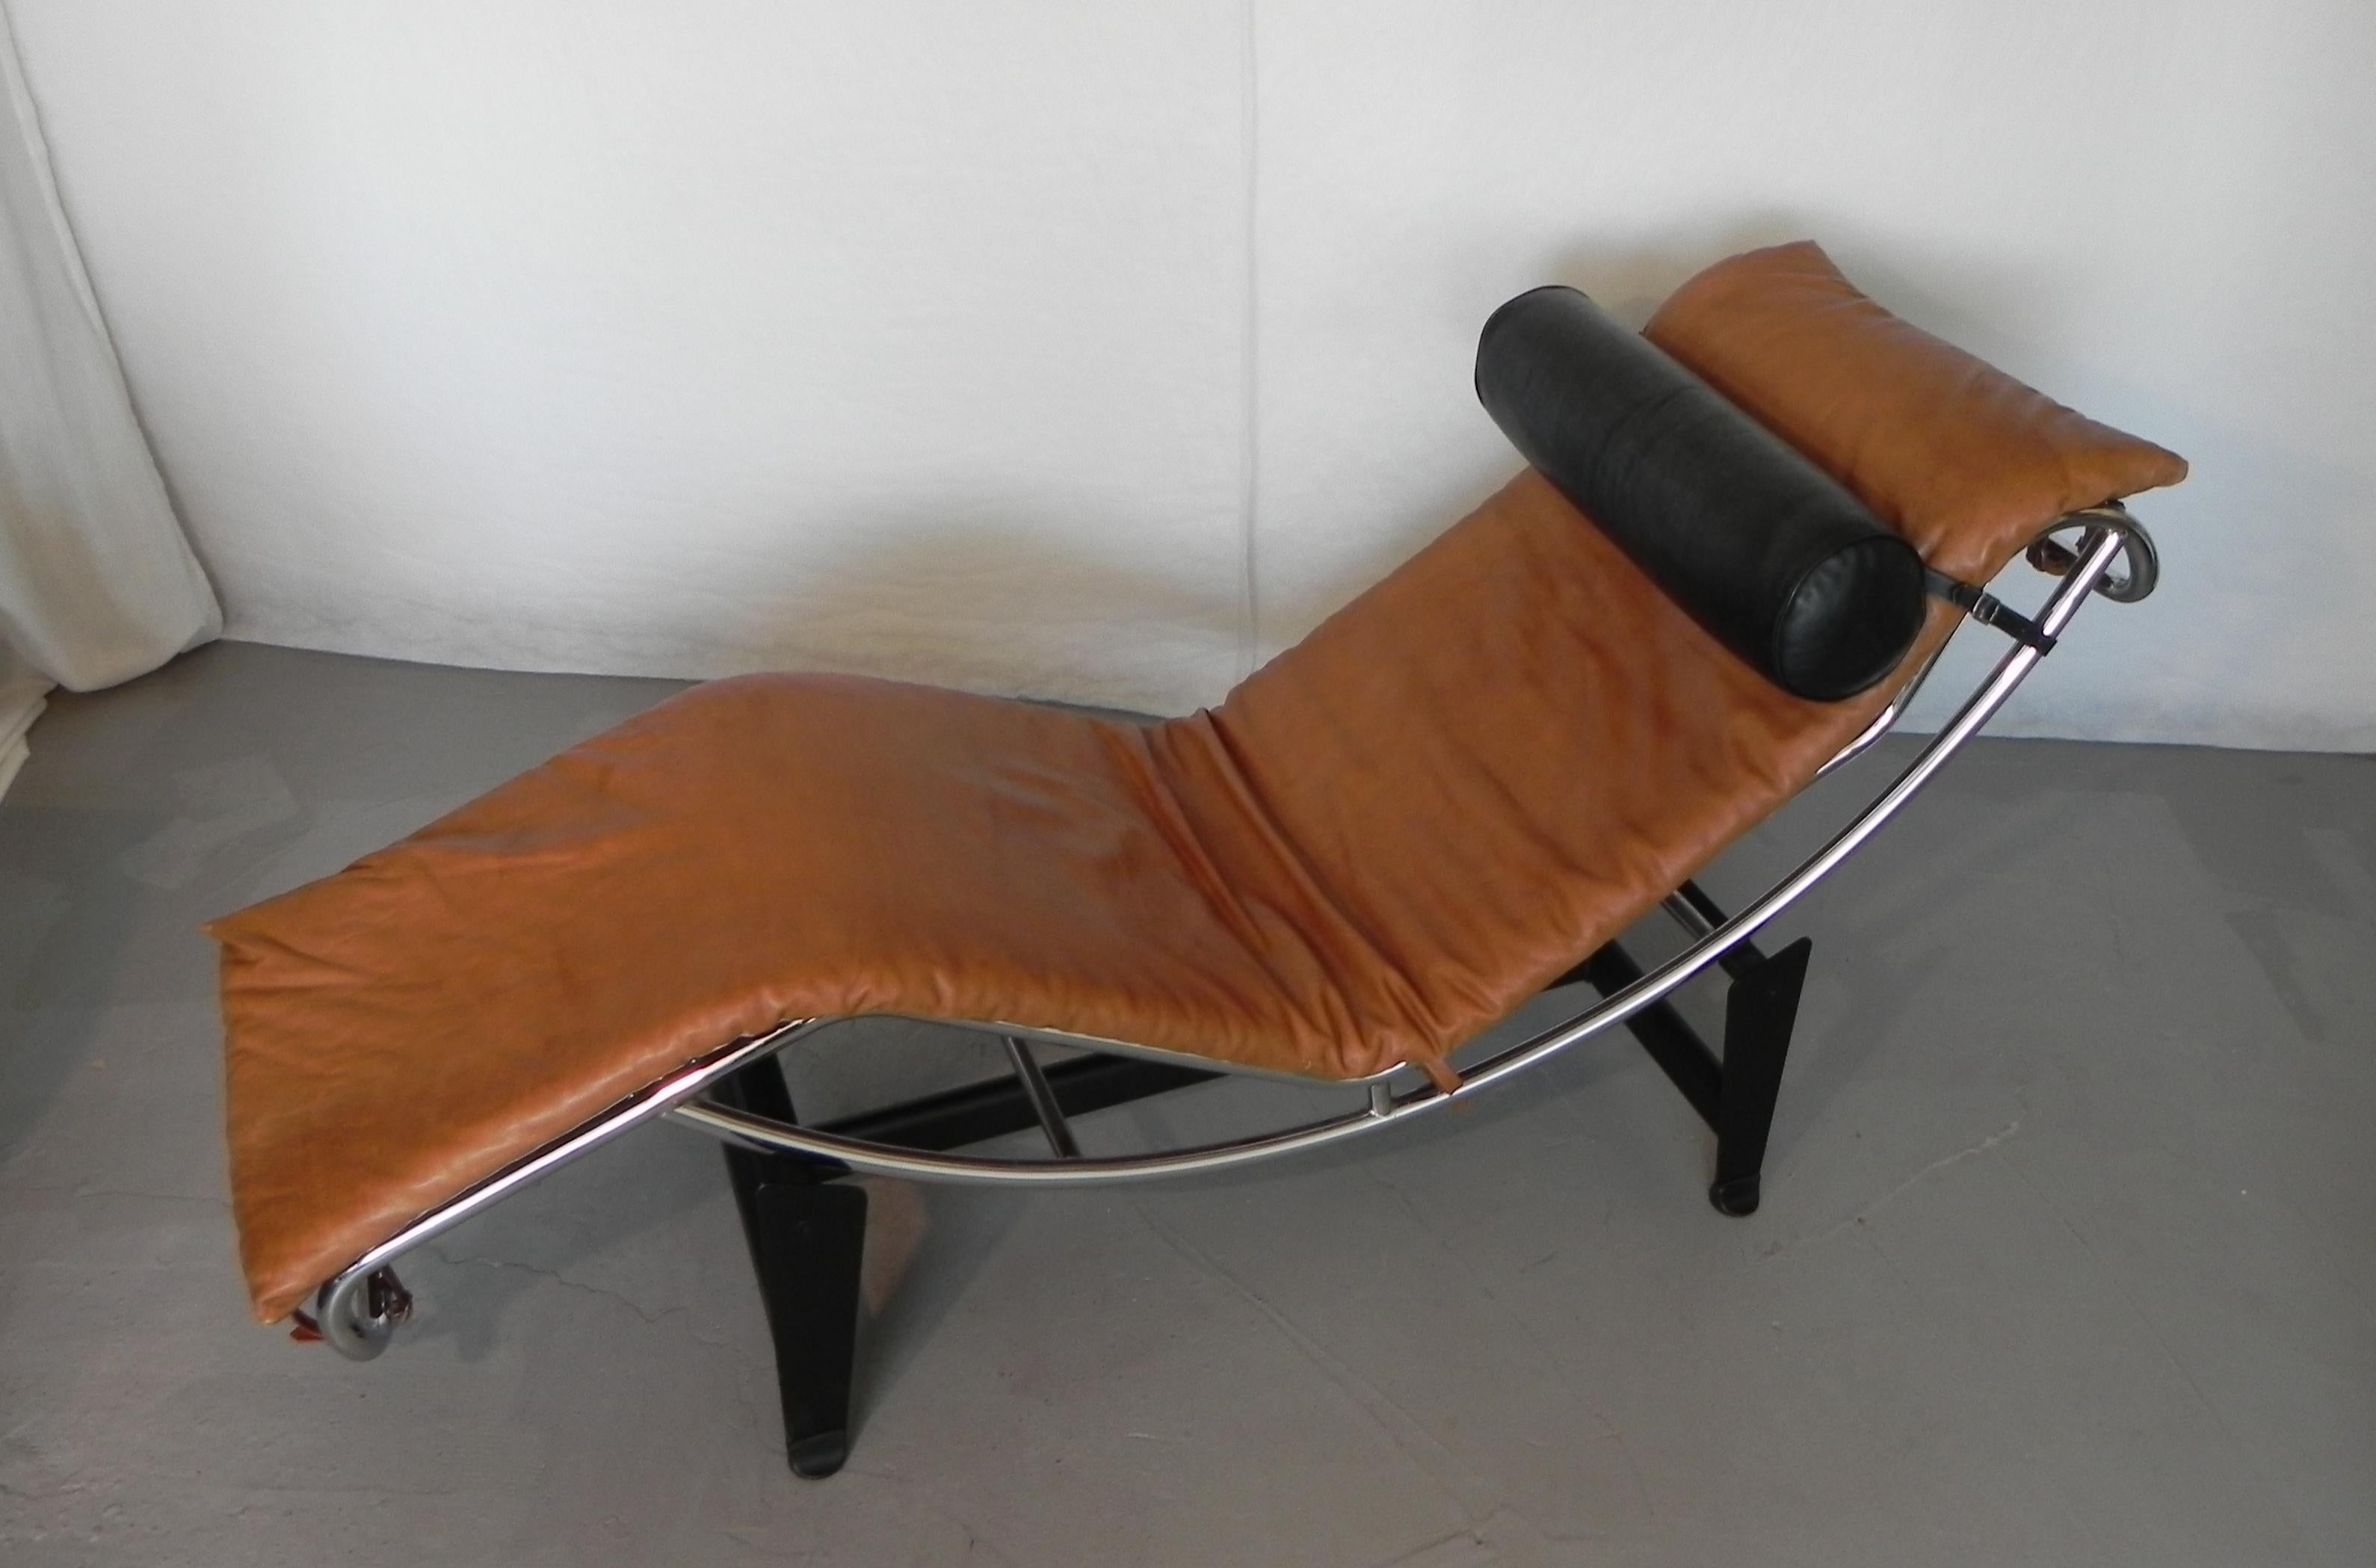 Metal chaise longue di ispirazione Bauhaus, anni 80 For Sale